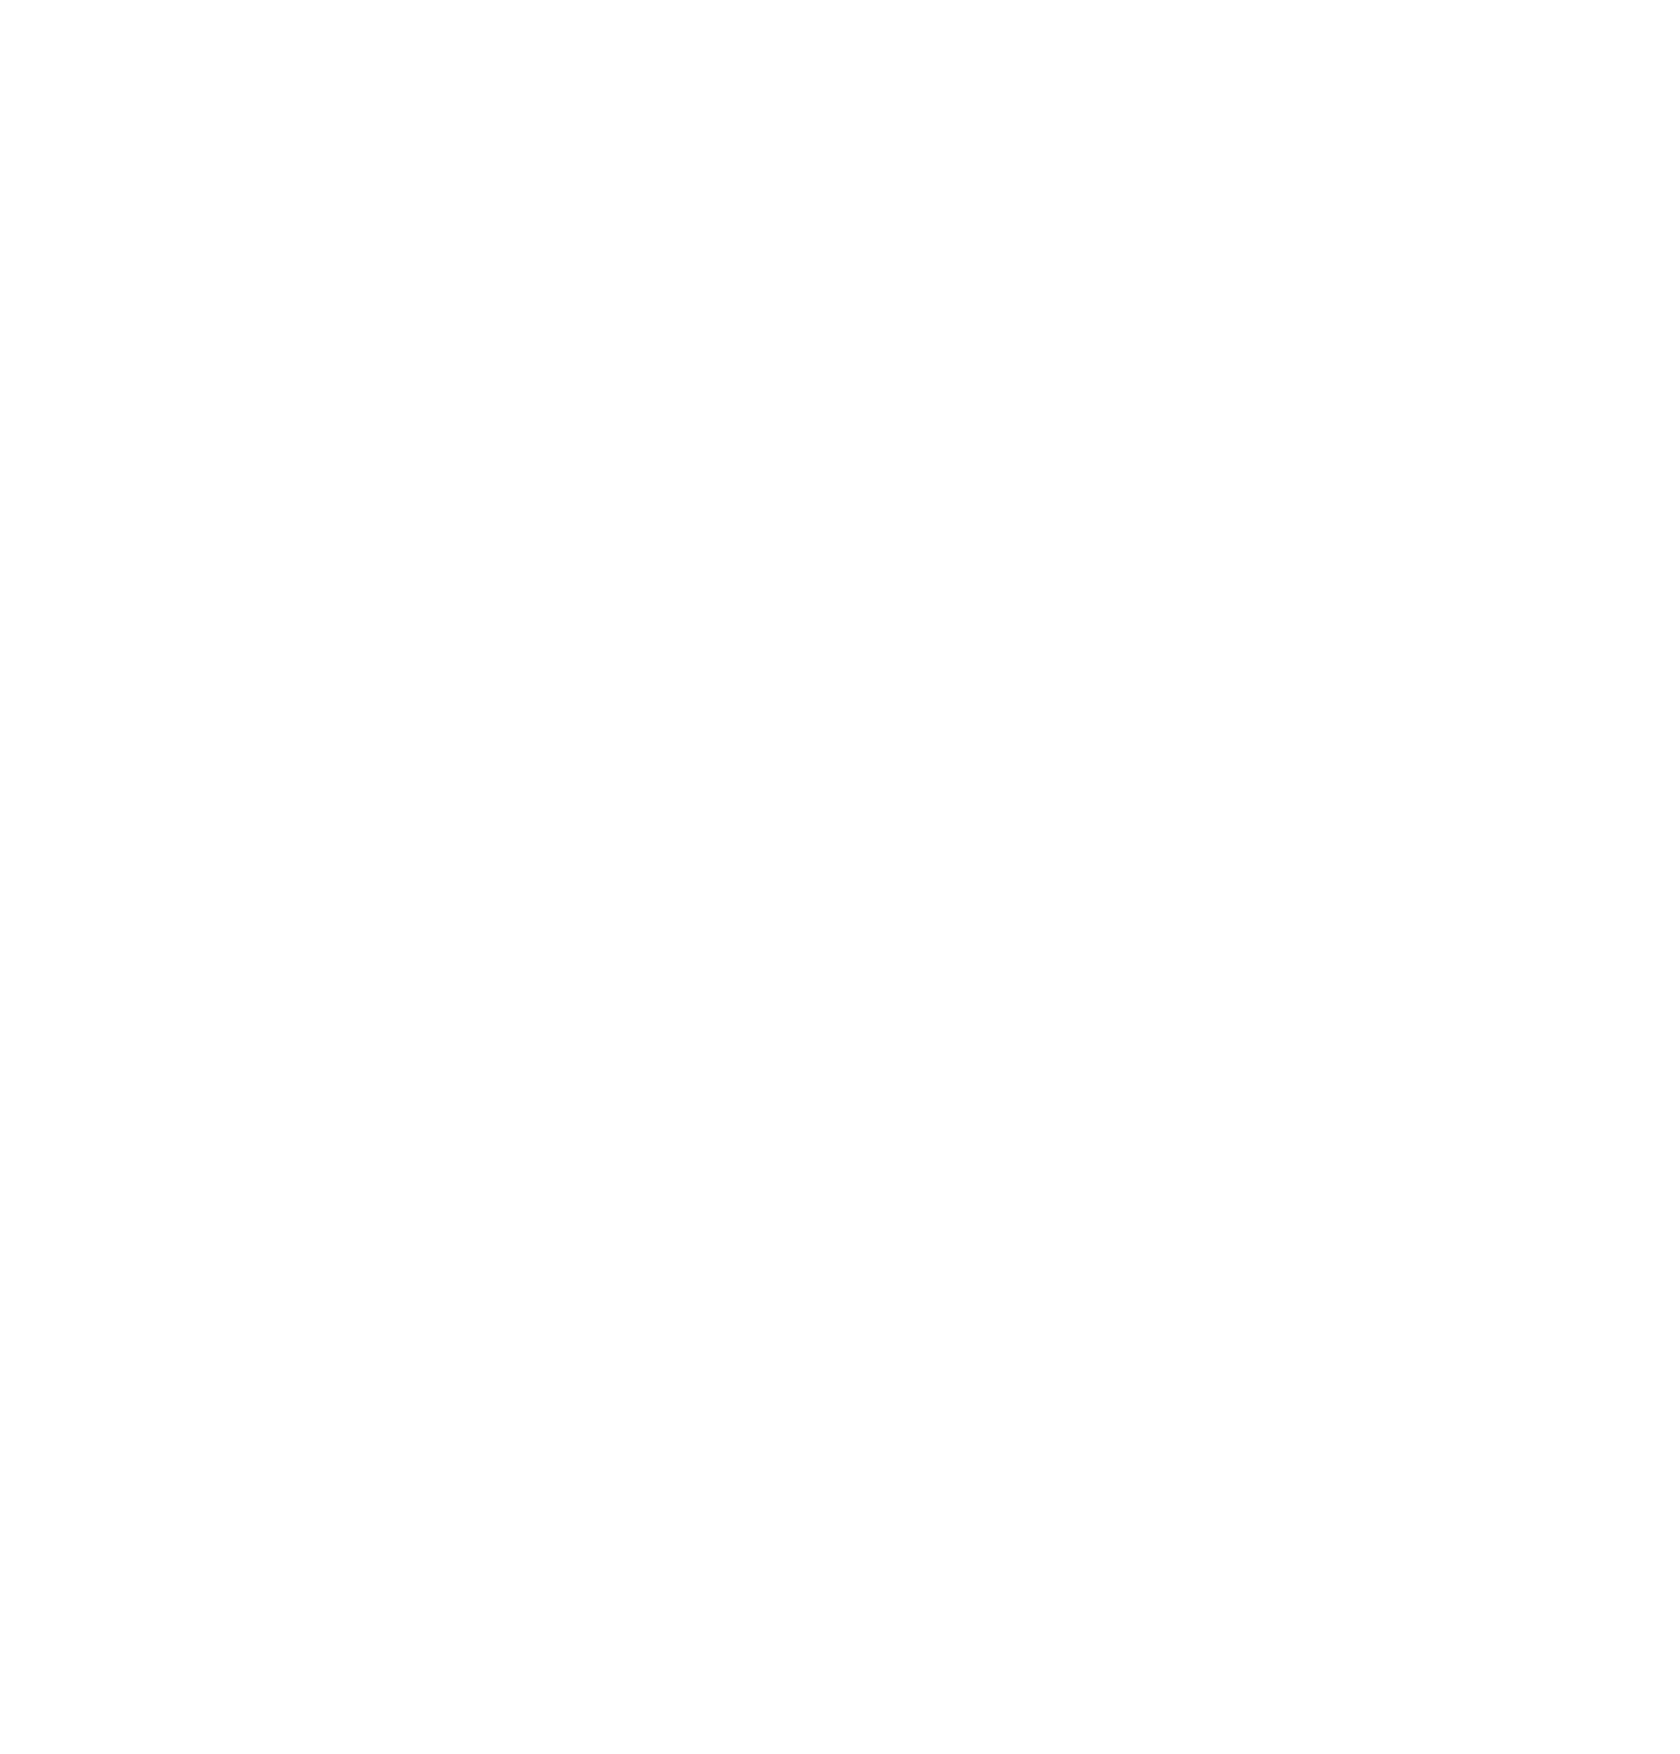 Мастер производственного обучения Гомельского СПТУ, председатель комитета ДОСААФ И.И. Неменок в палаточном городке с учащимися перед выходом на стрельбище во время 2-х дневного похода по окрестностям г. Гомеля